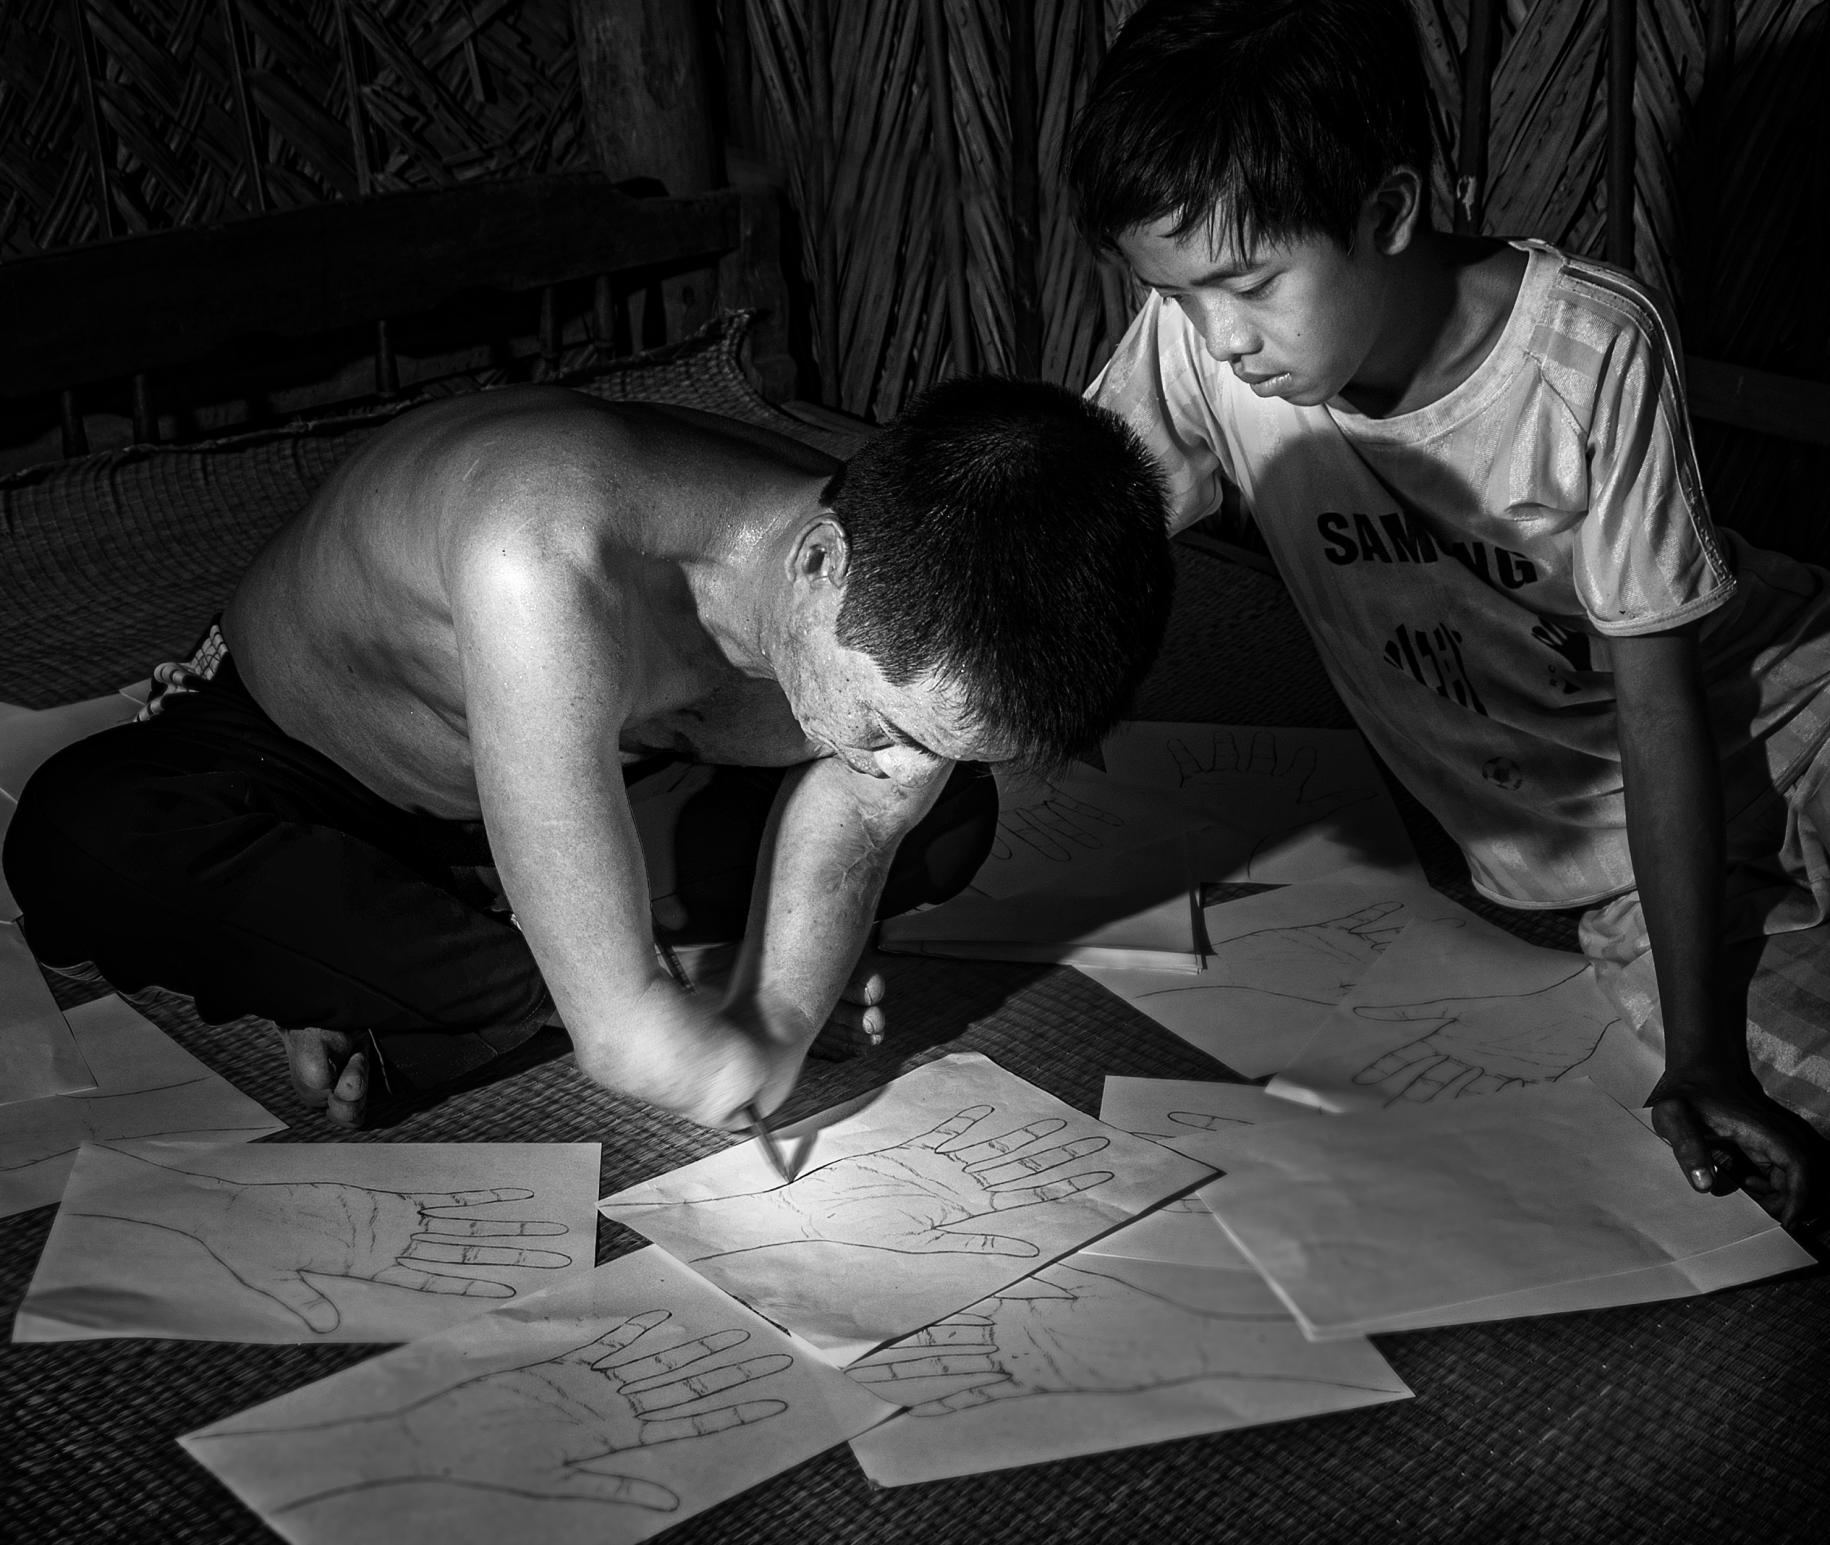 Foto en blanco y negro de un hombre y un niño. El hombre tiene una mano amputada, están sentados juntos en el suelo dibujando y escribiendo en hojas de papel.